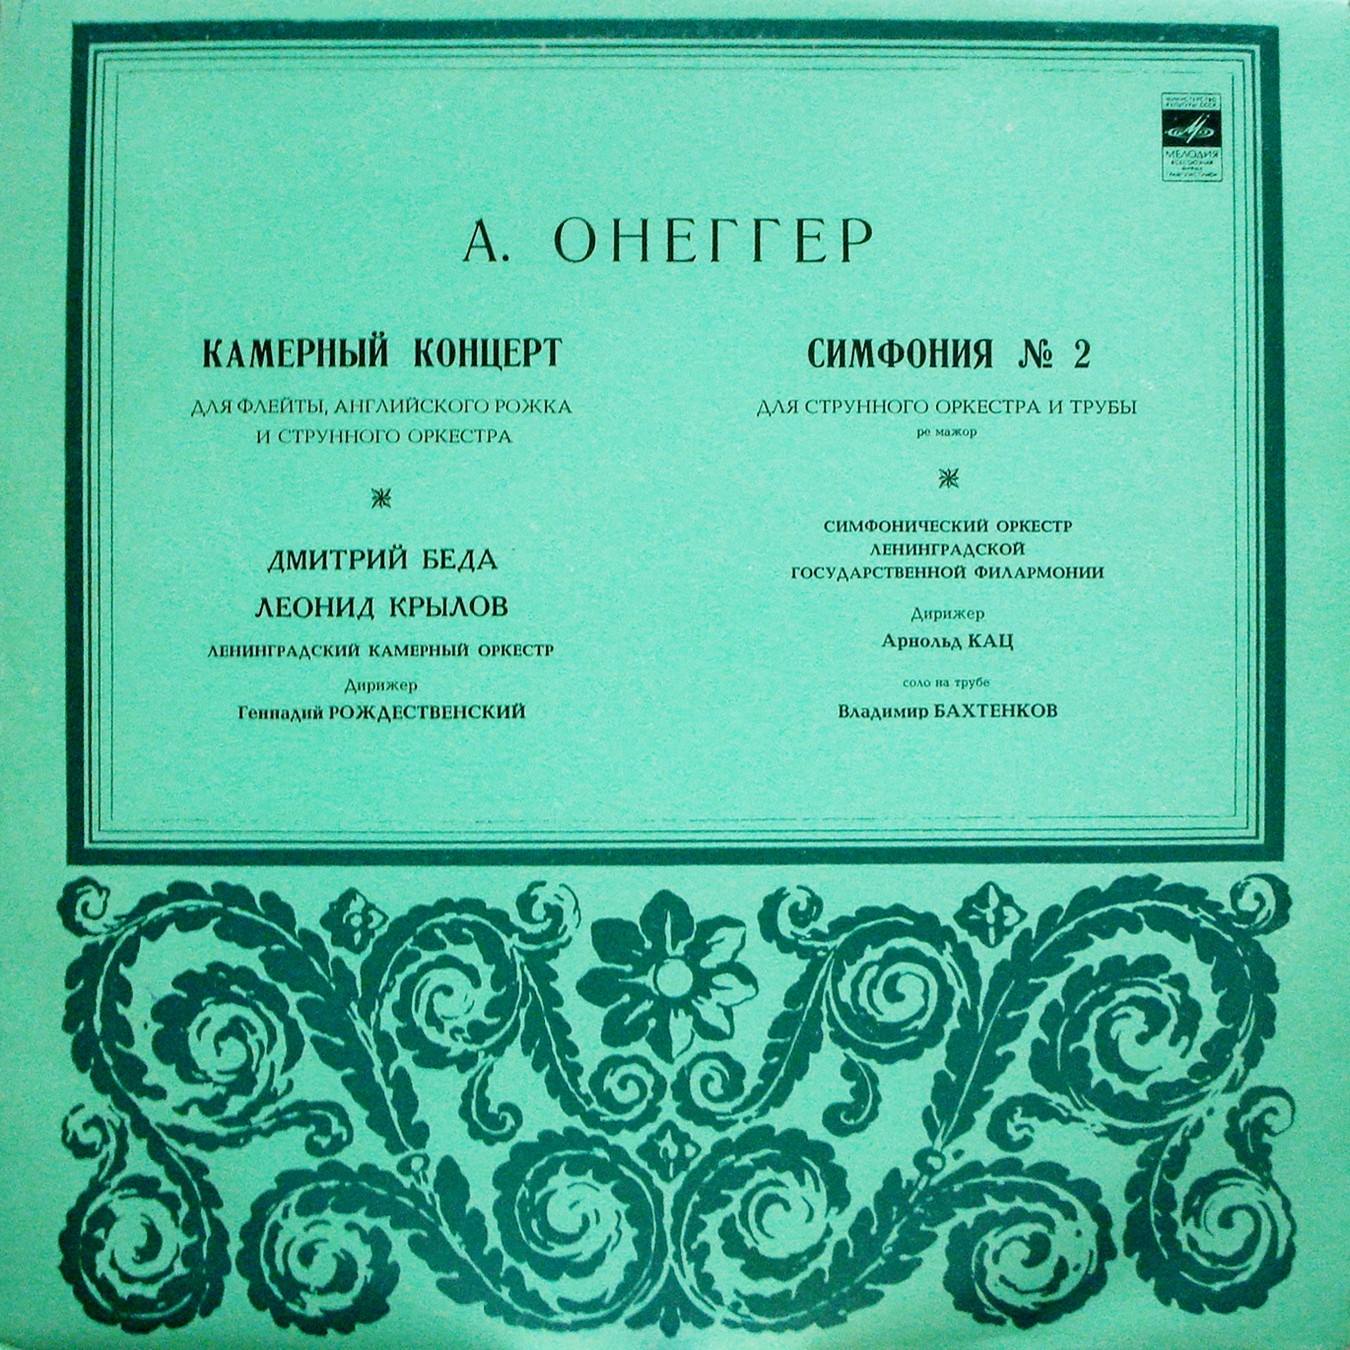 А. ОНЕГГЕР (1892–1955): Камерный концерт / Симфония №2 для струнного оркестра и трубы